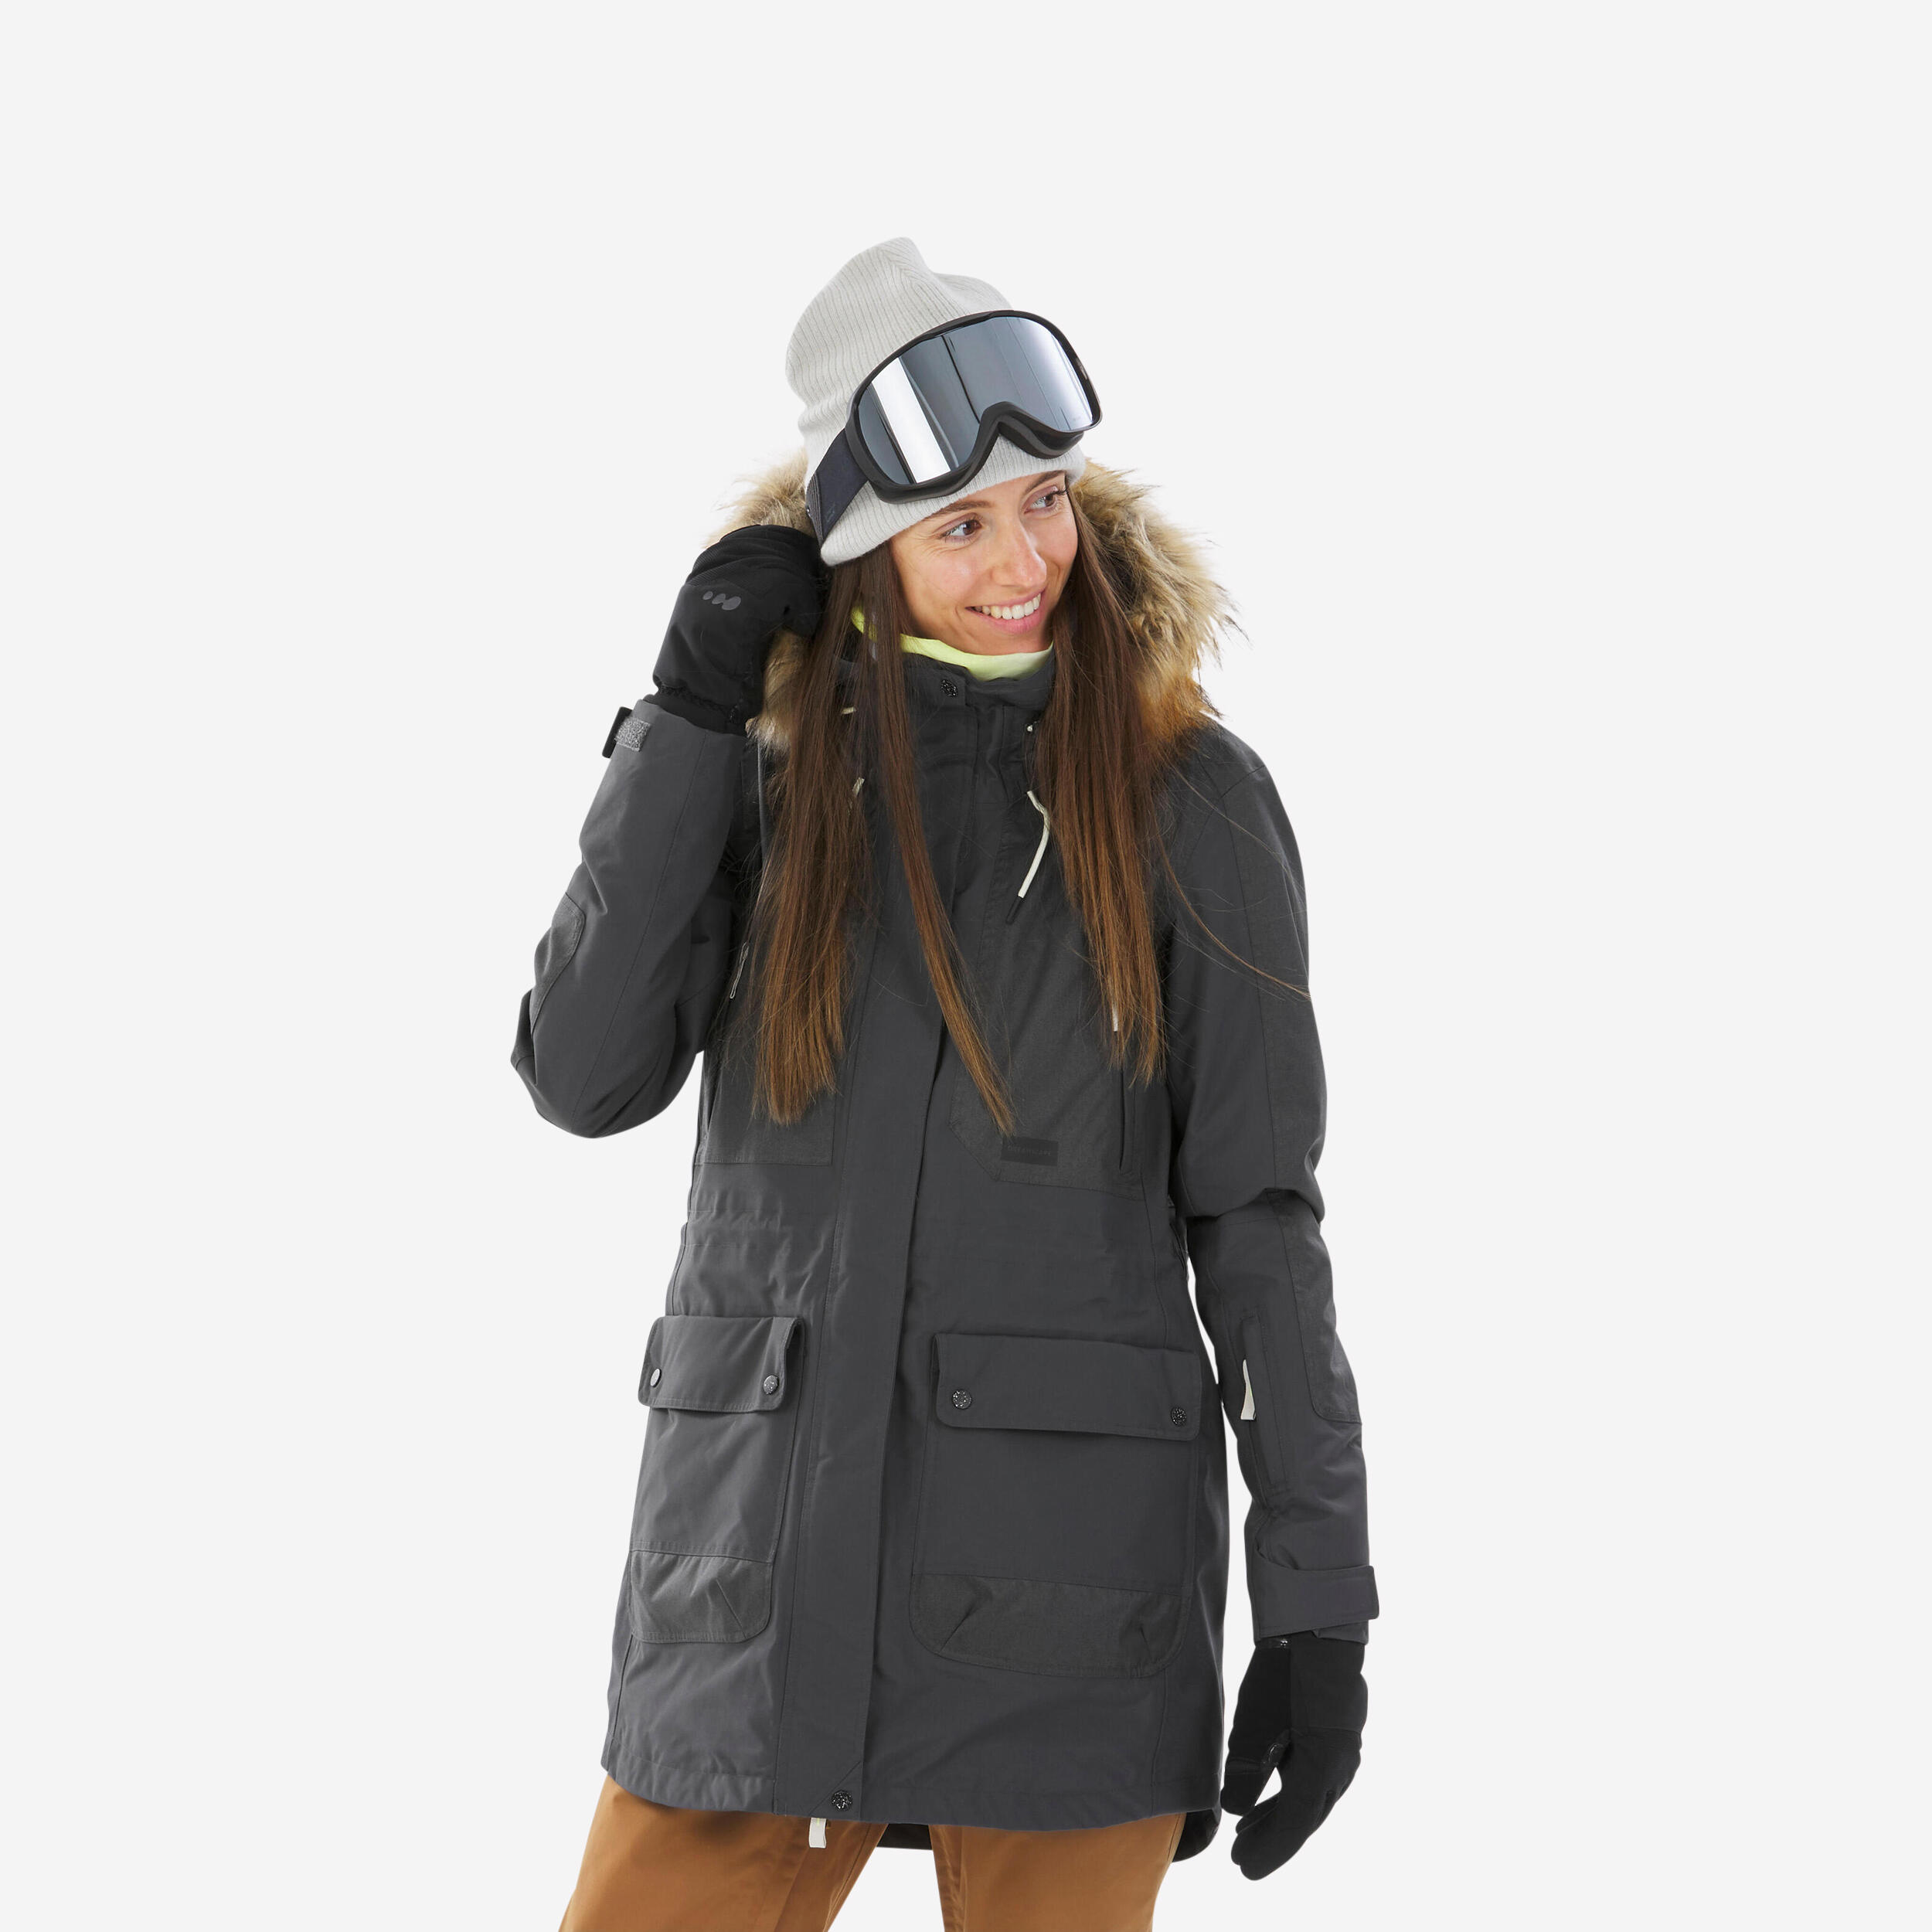 Women’s Snowboard Jacket